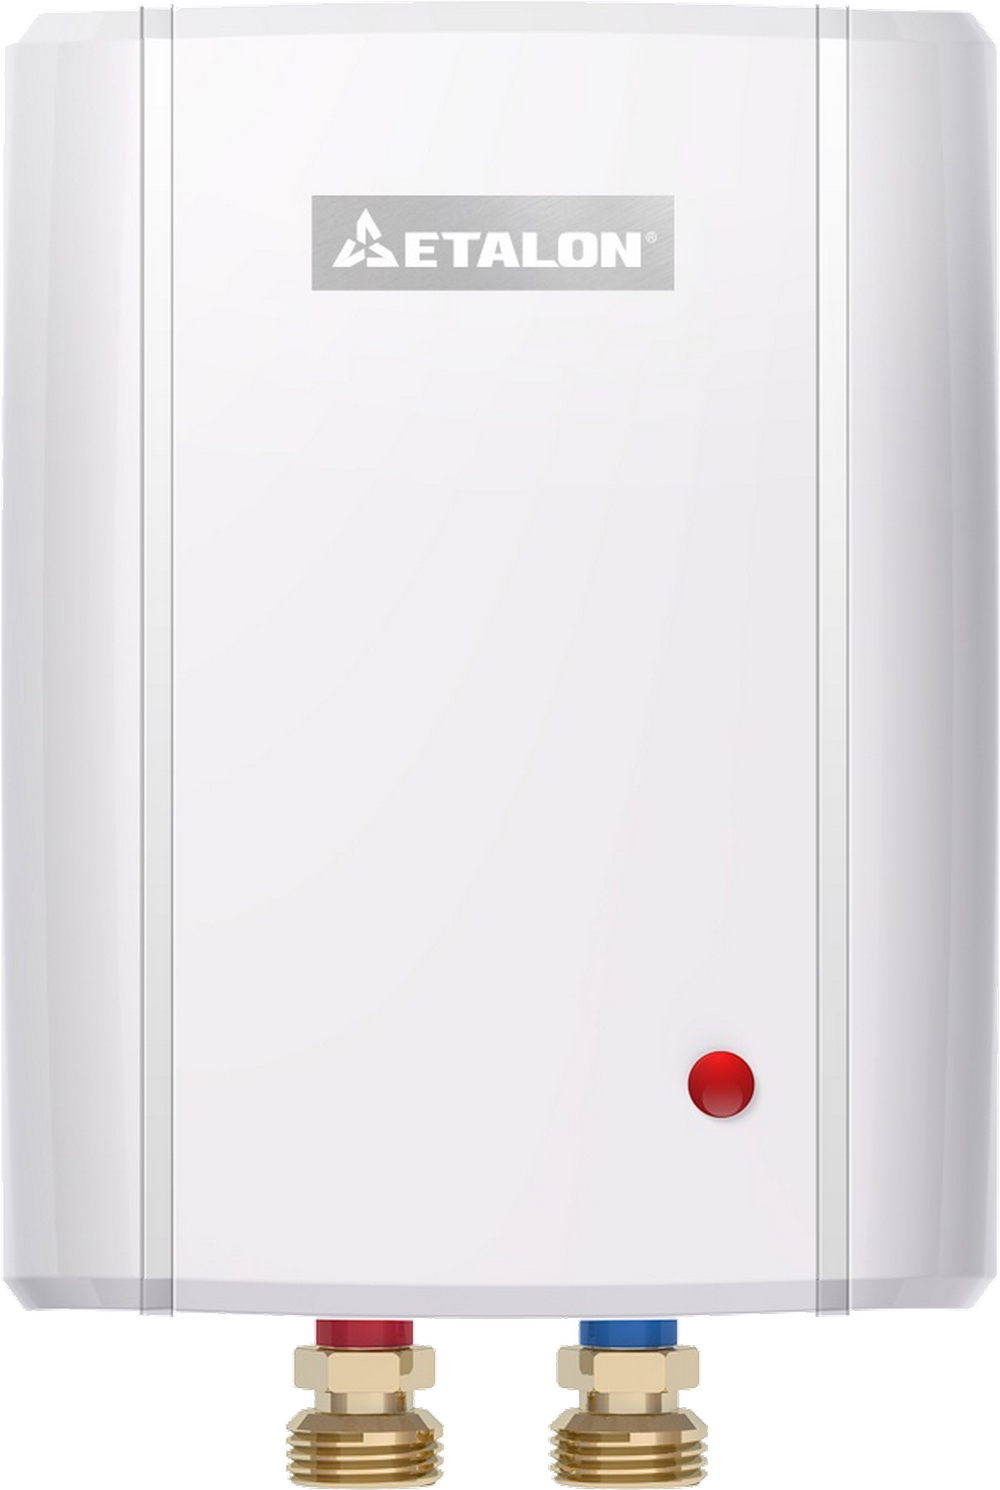 Проточный водонагреватель мощностью 4.5 киловатт Etalon Plus 4500